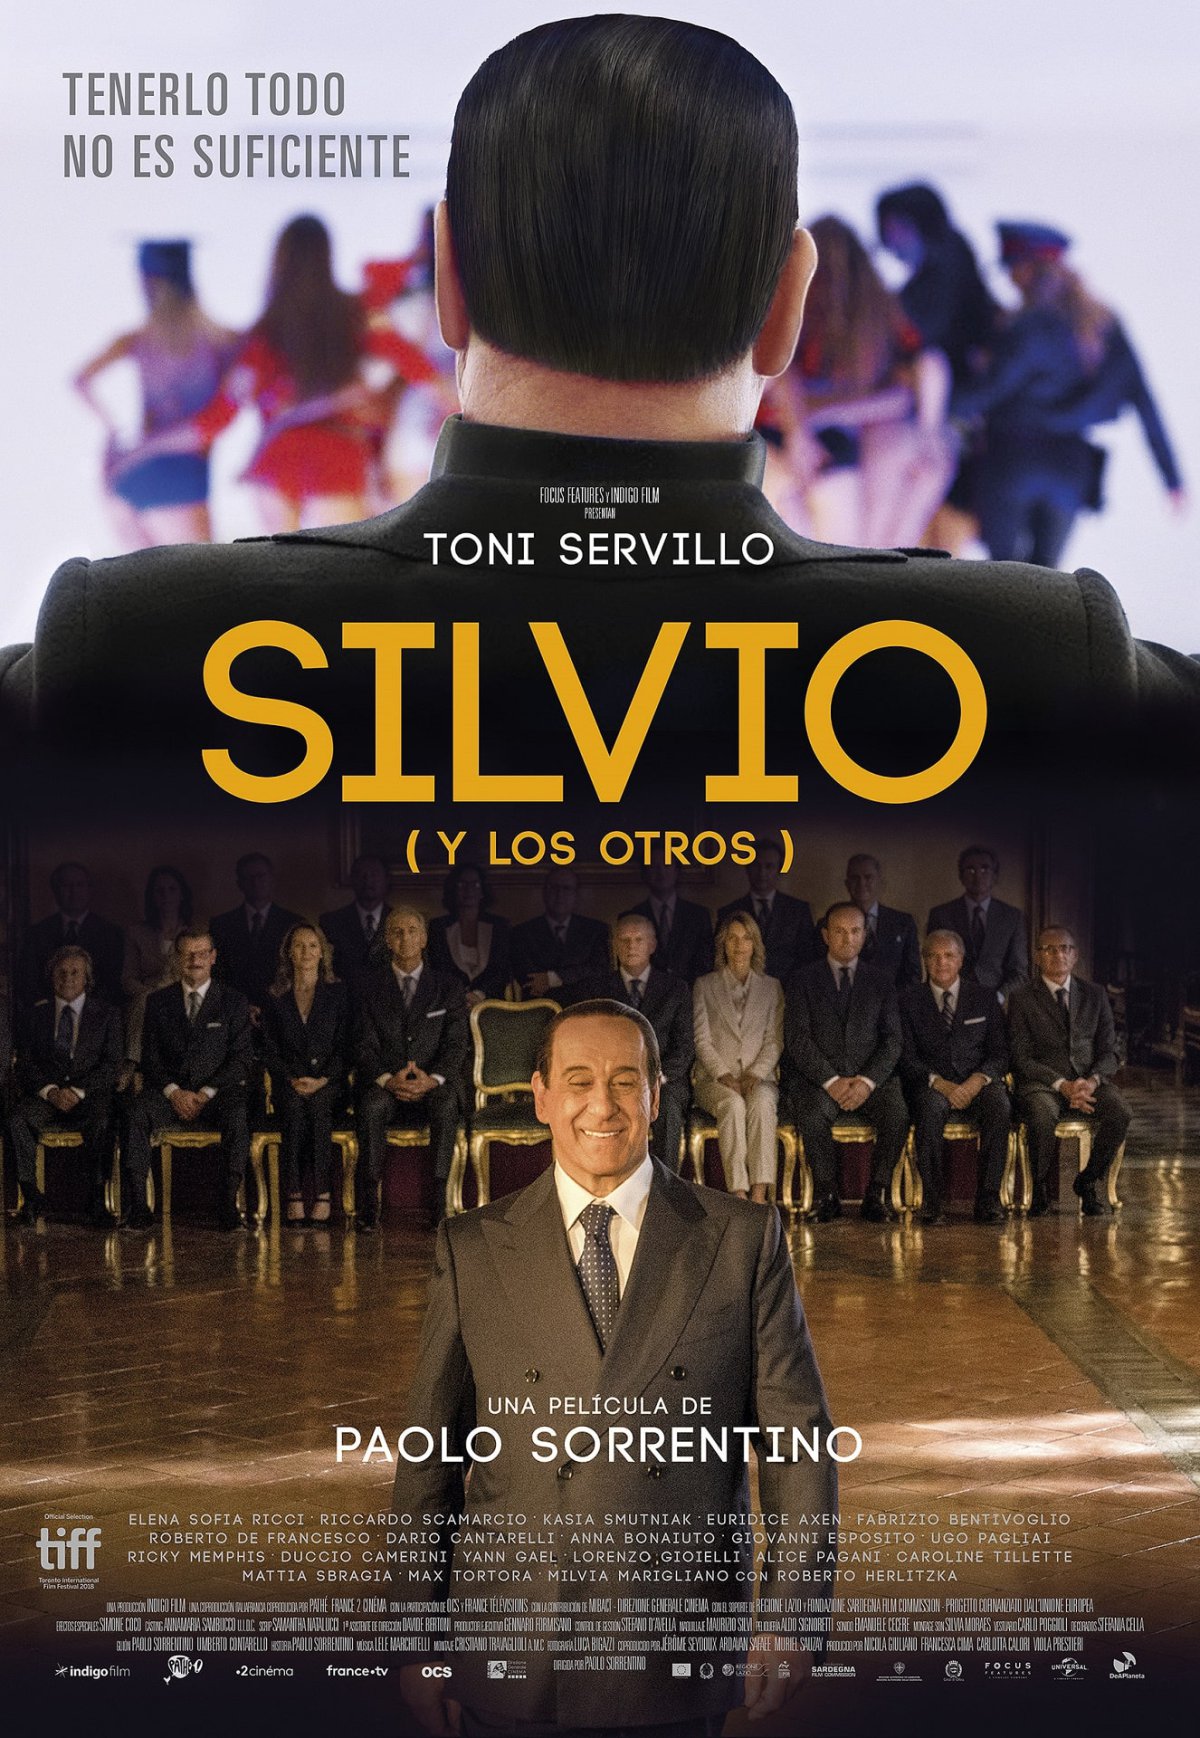 Silvio (y los otros) (Paolo Sorrentino)